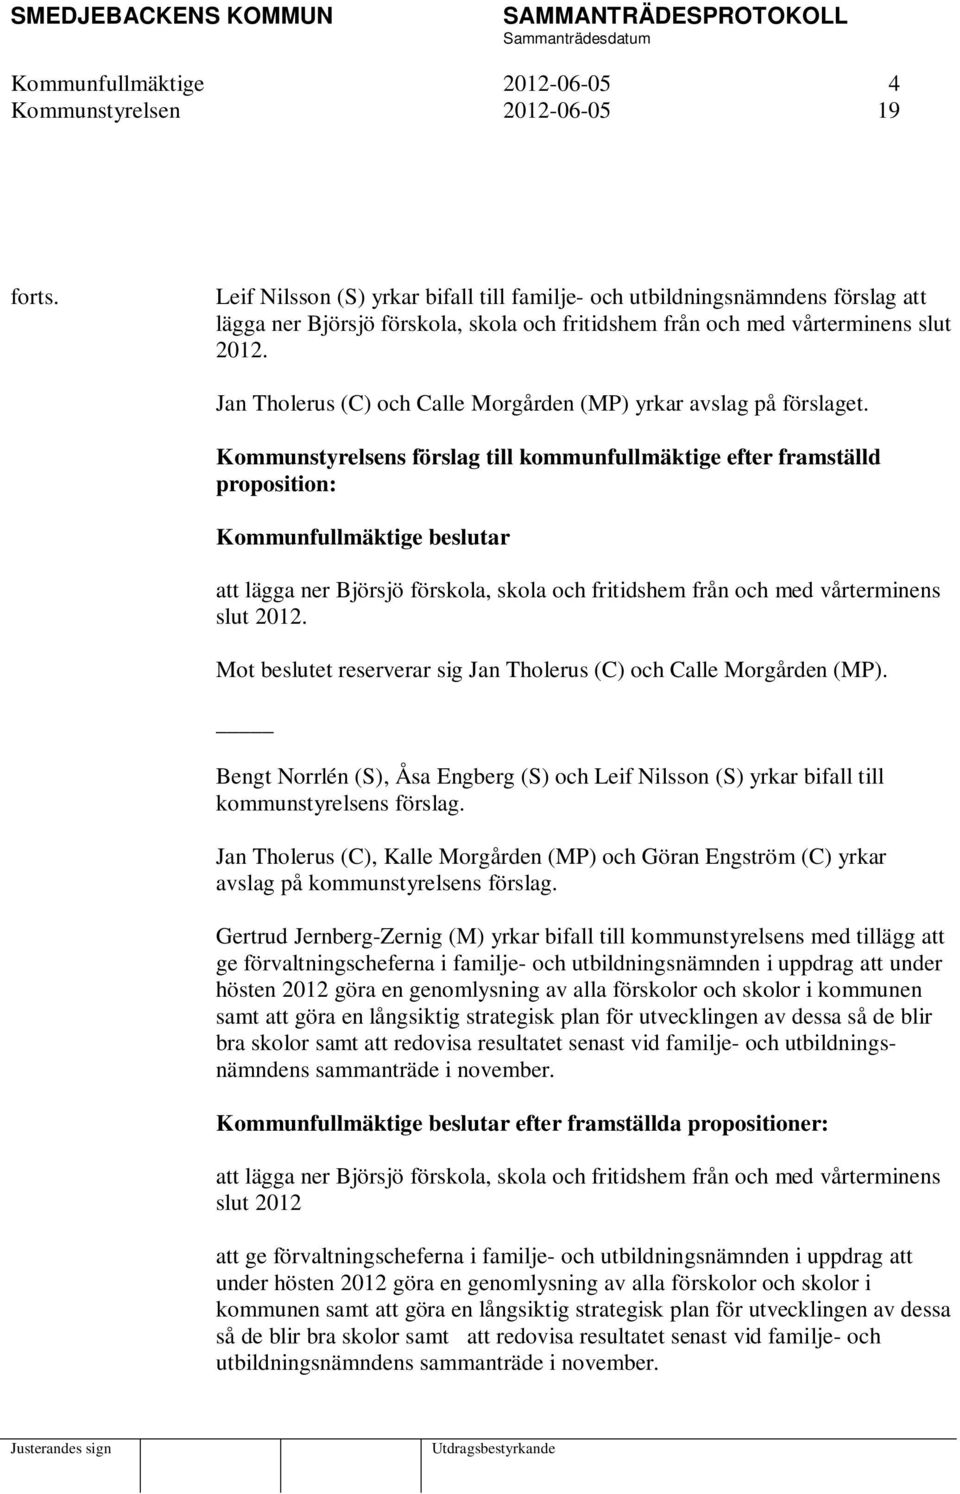 Jan Tholerus (C) och Calle Morgården (MP) yrkar avslag på förslaget.